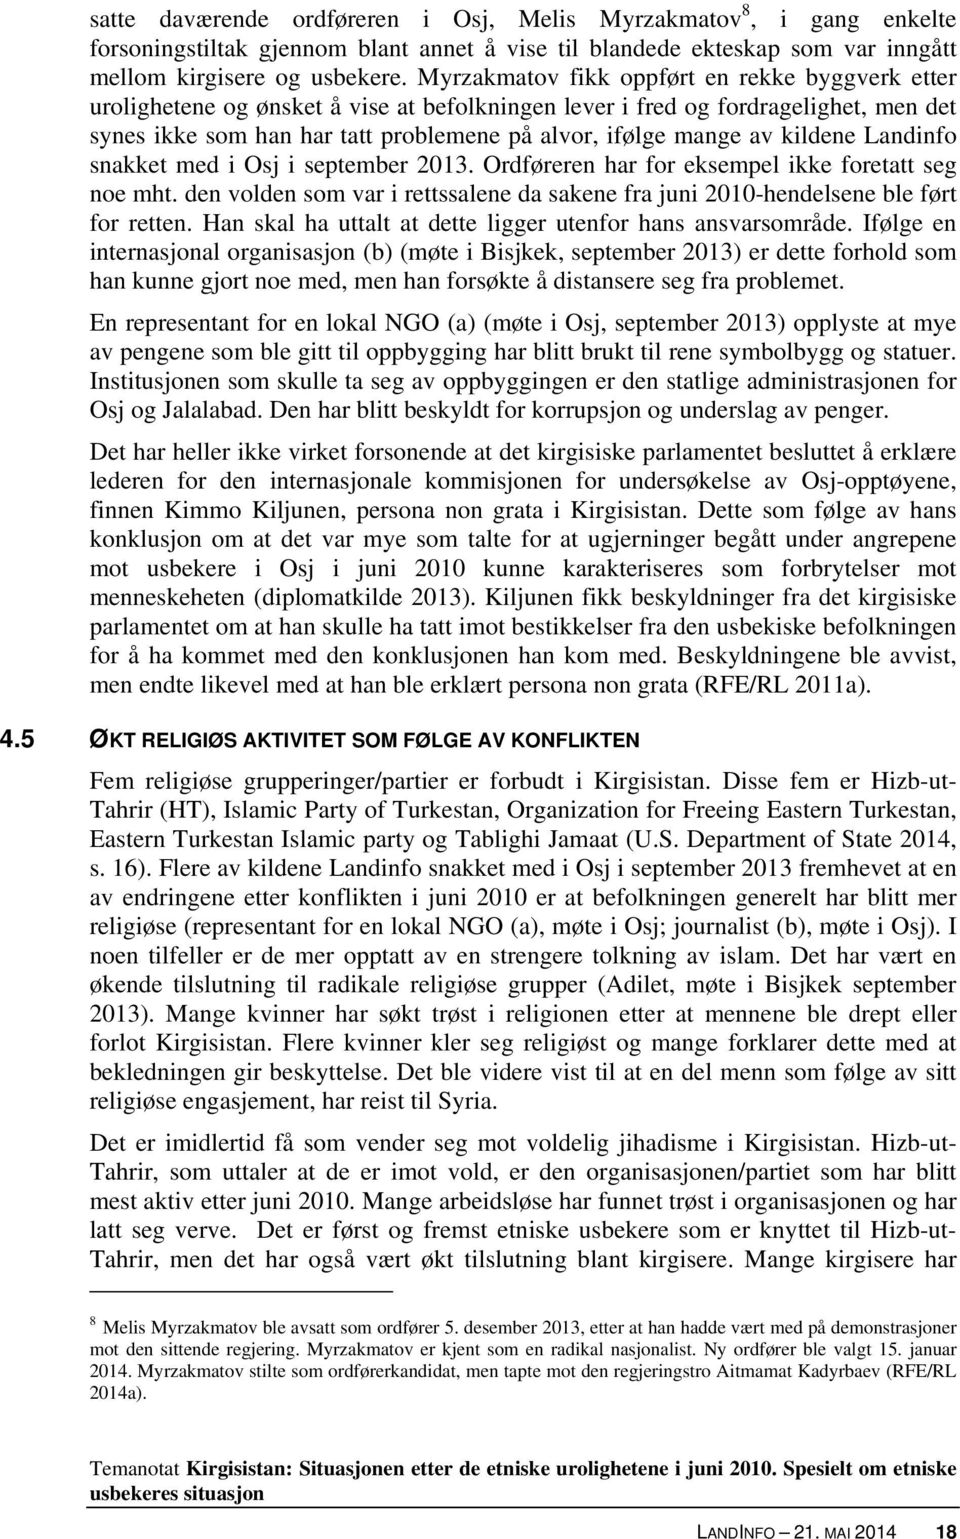 kildene Landinfo snakket med i Osj i september 2013. Ordføreren har for eksempel ikke foretatt seg noe mht. den volden som var i rettssalene da sakene fra juni 2010-hendelsene ble ført for retten.